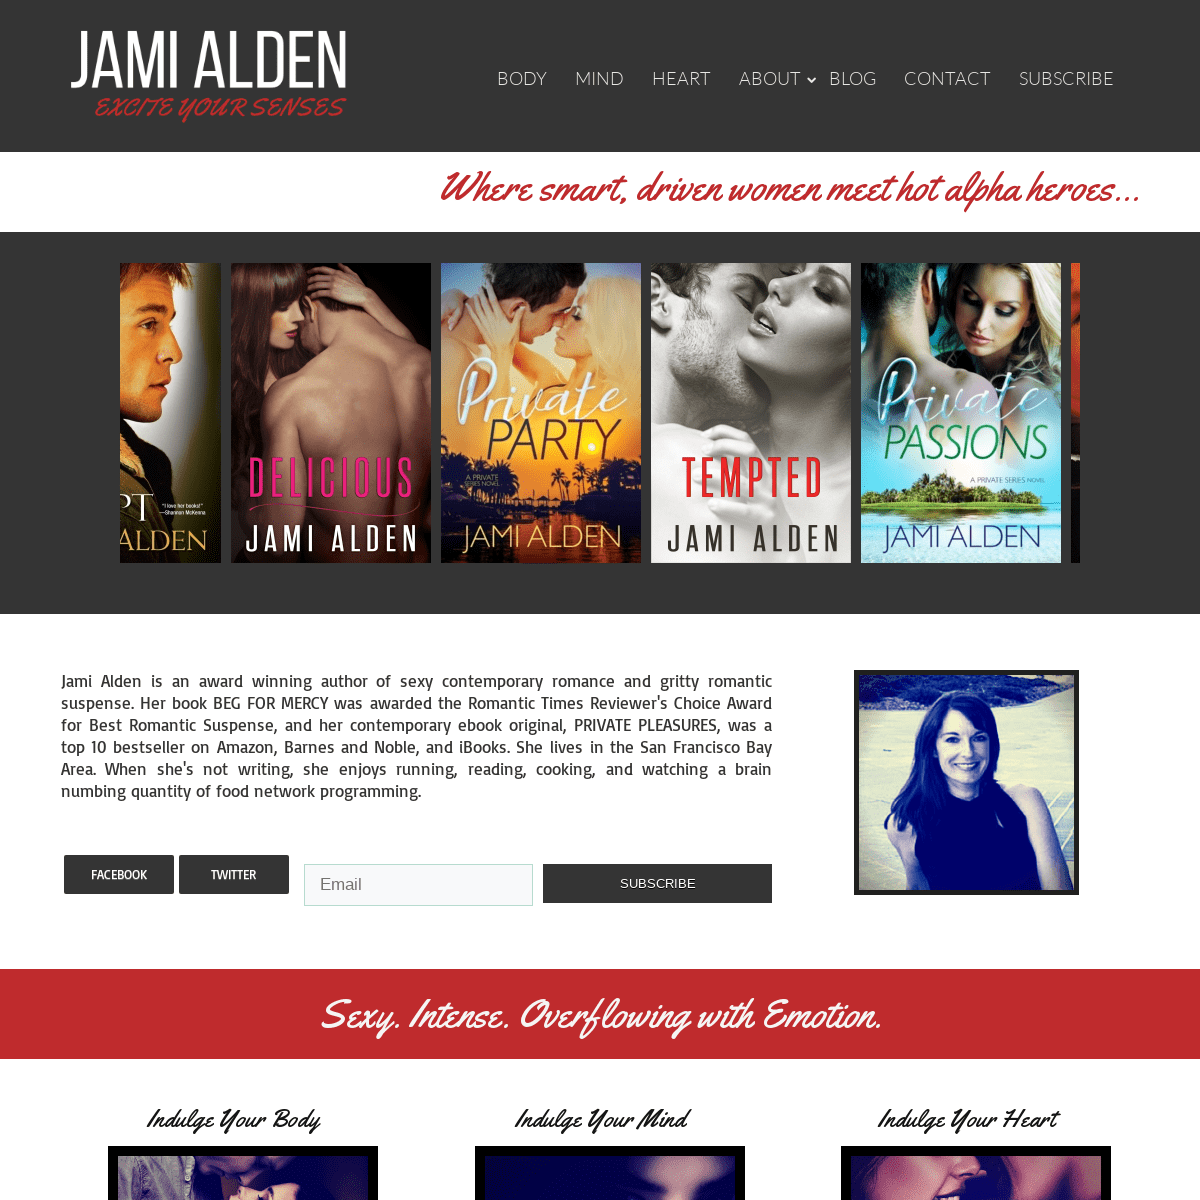 Jami Alden – Excite your senses